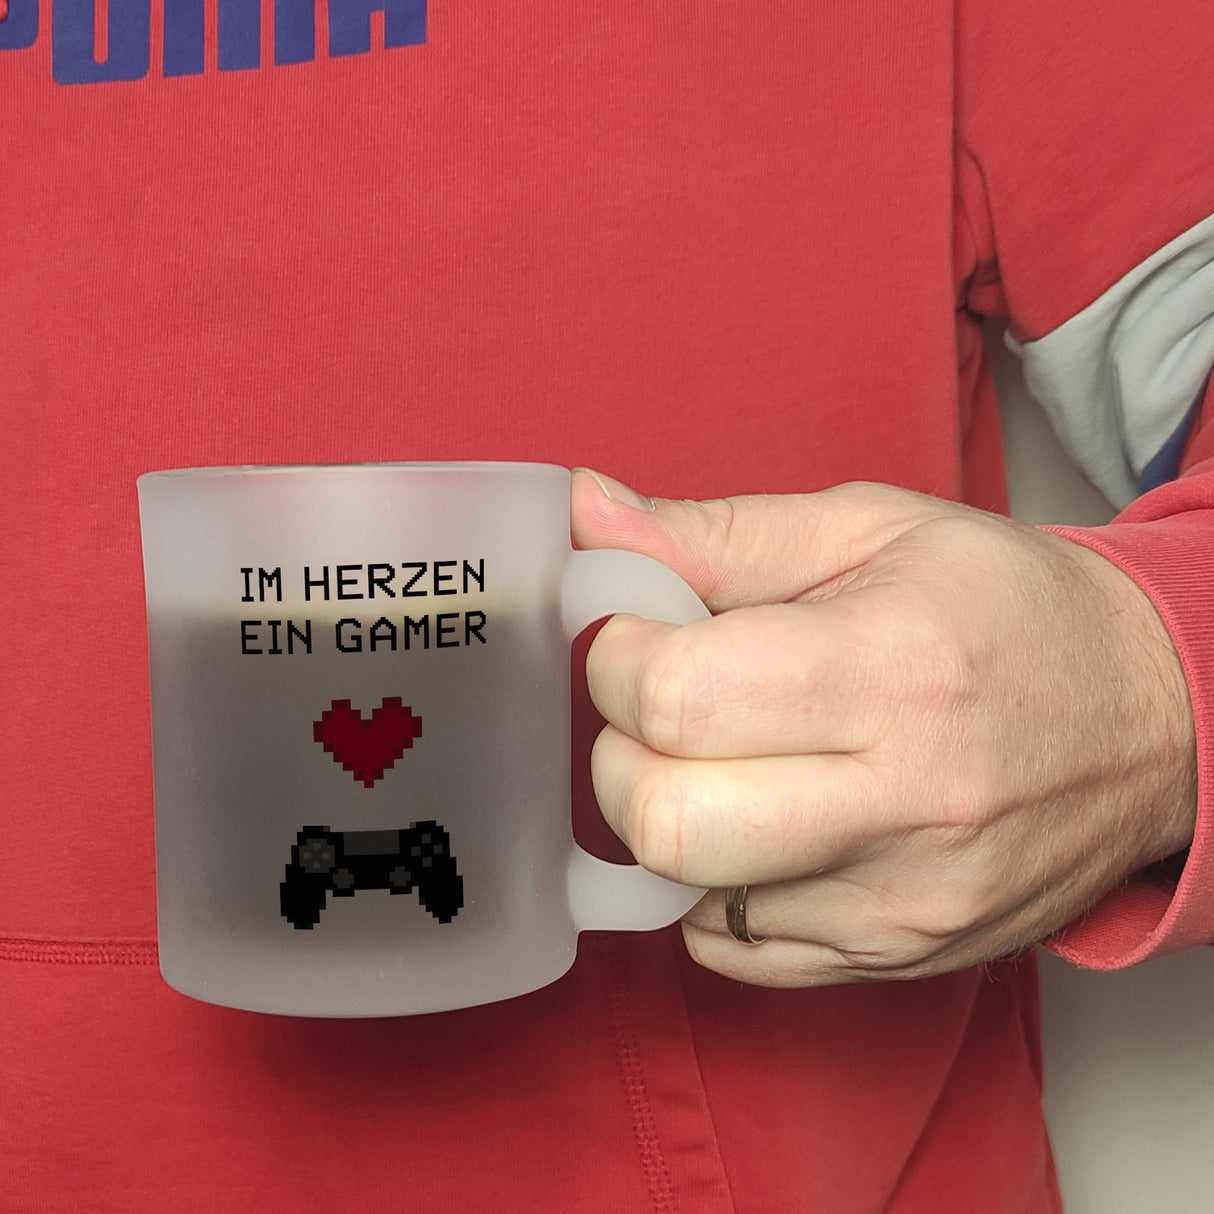 Game Controller Kaffeebecher mit Spruch Im Herzen ein Gamer